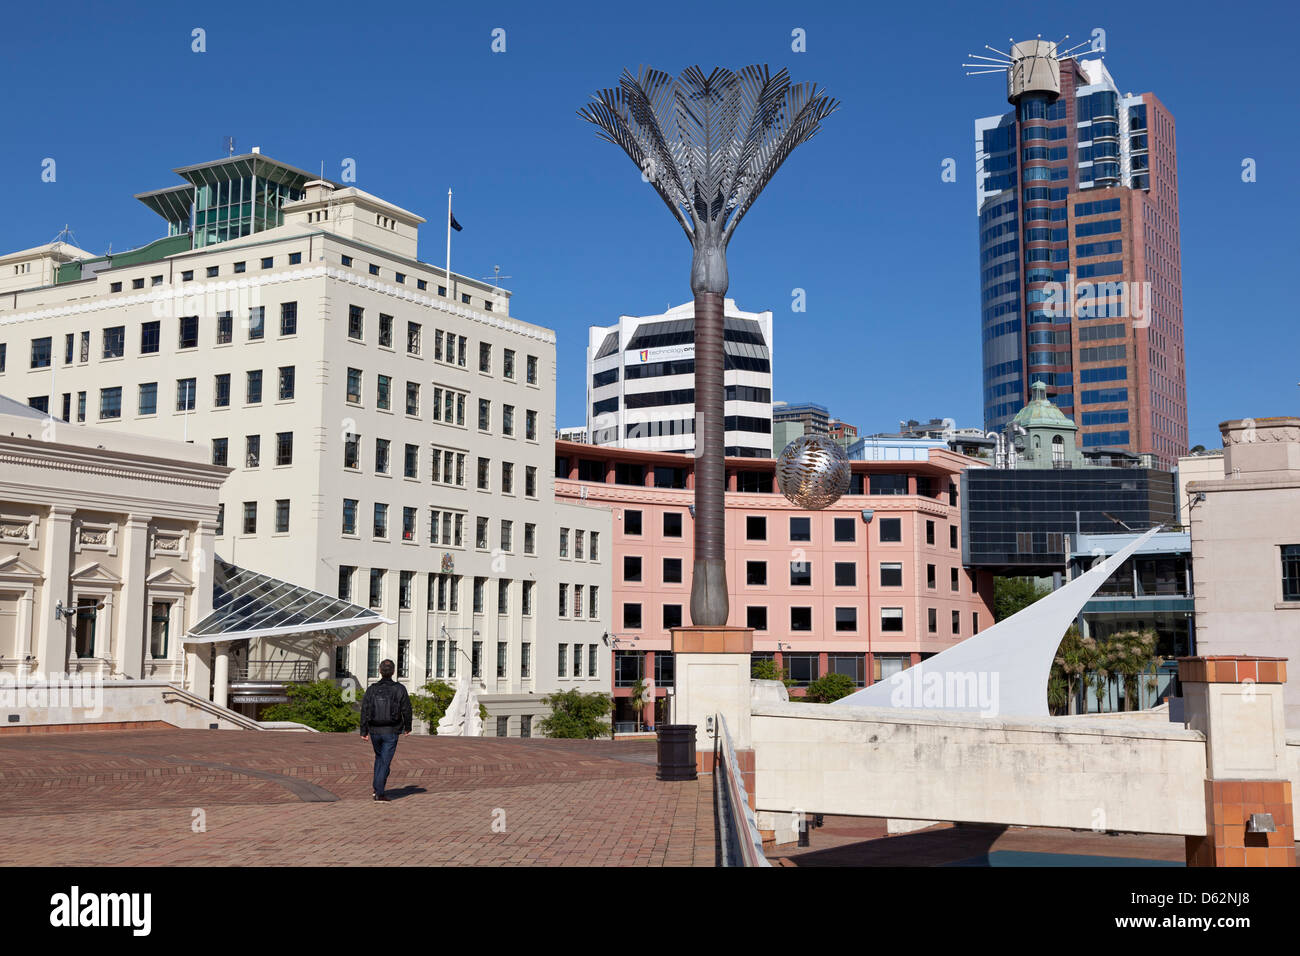 Place de la ville avec la fougère sculpture par Neil Dawson, Wellington, Nouvelle-Zélande Banque D'Images